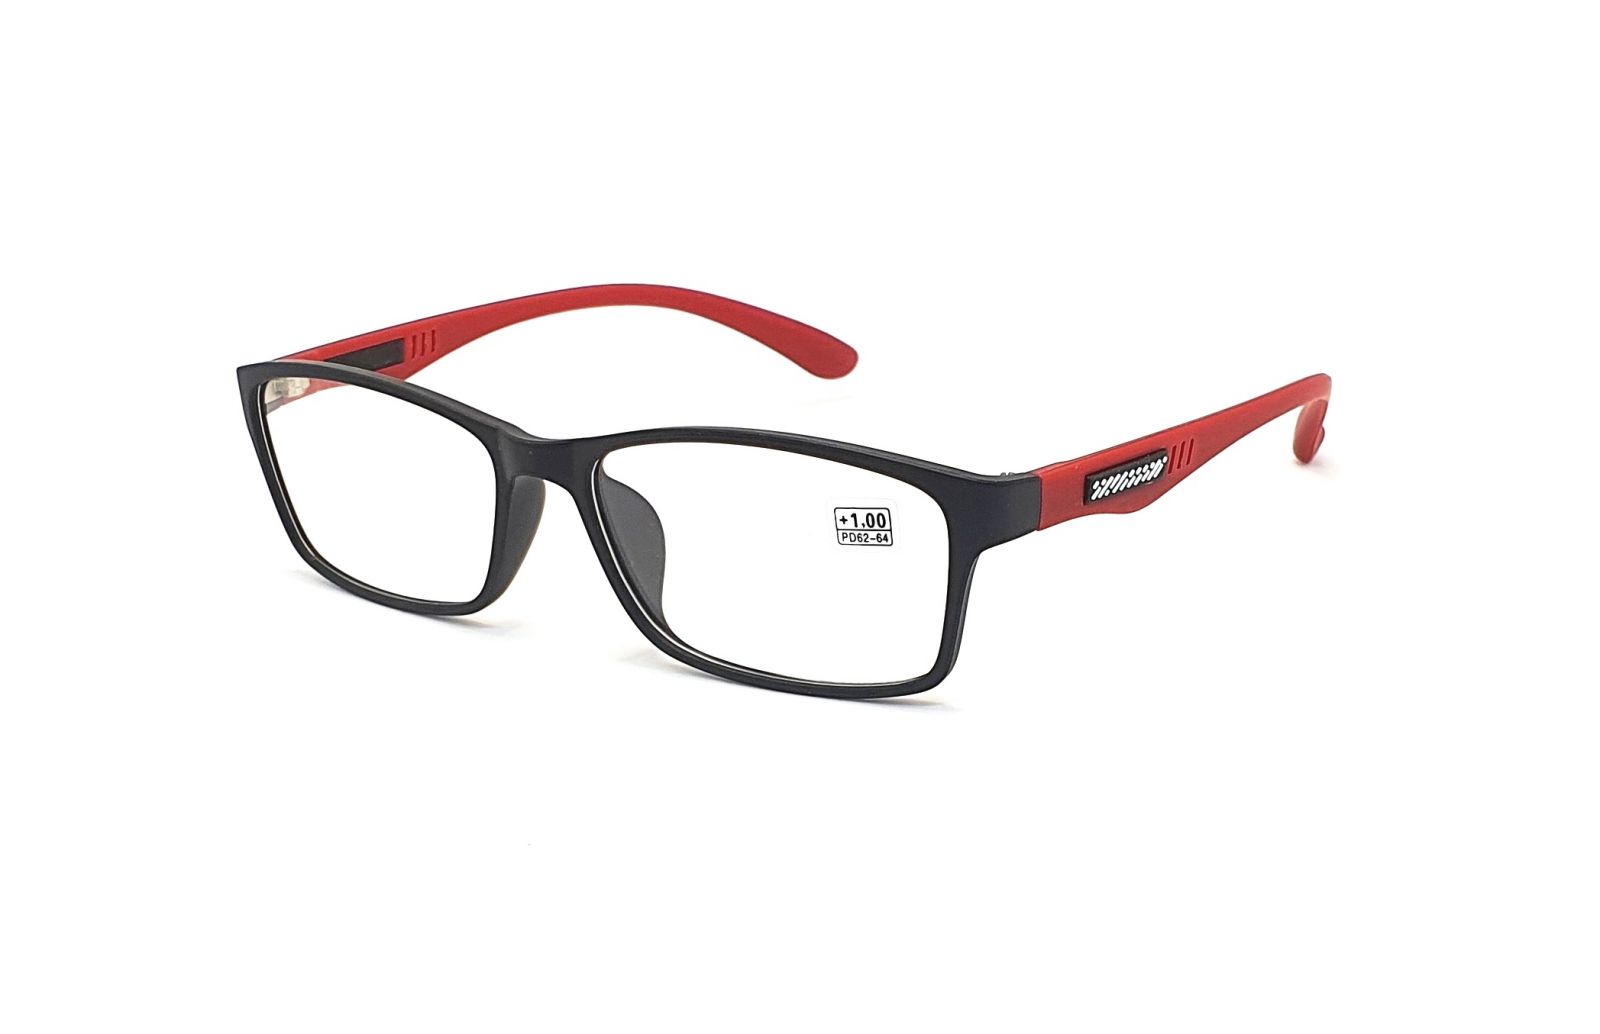 Dioptrické brýle CH8801 +1,00 black/red